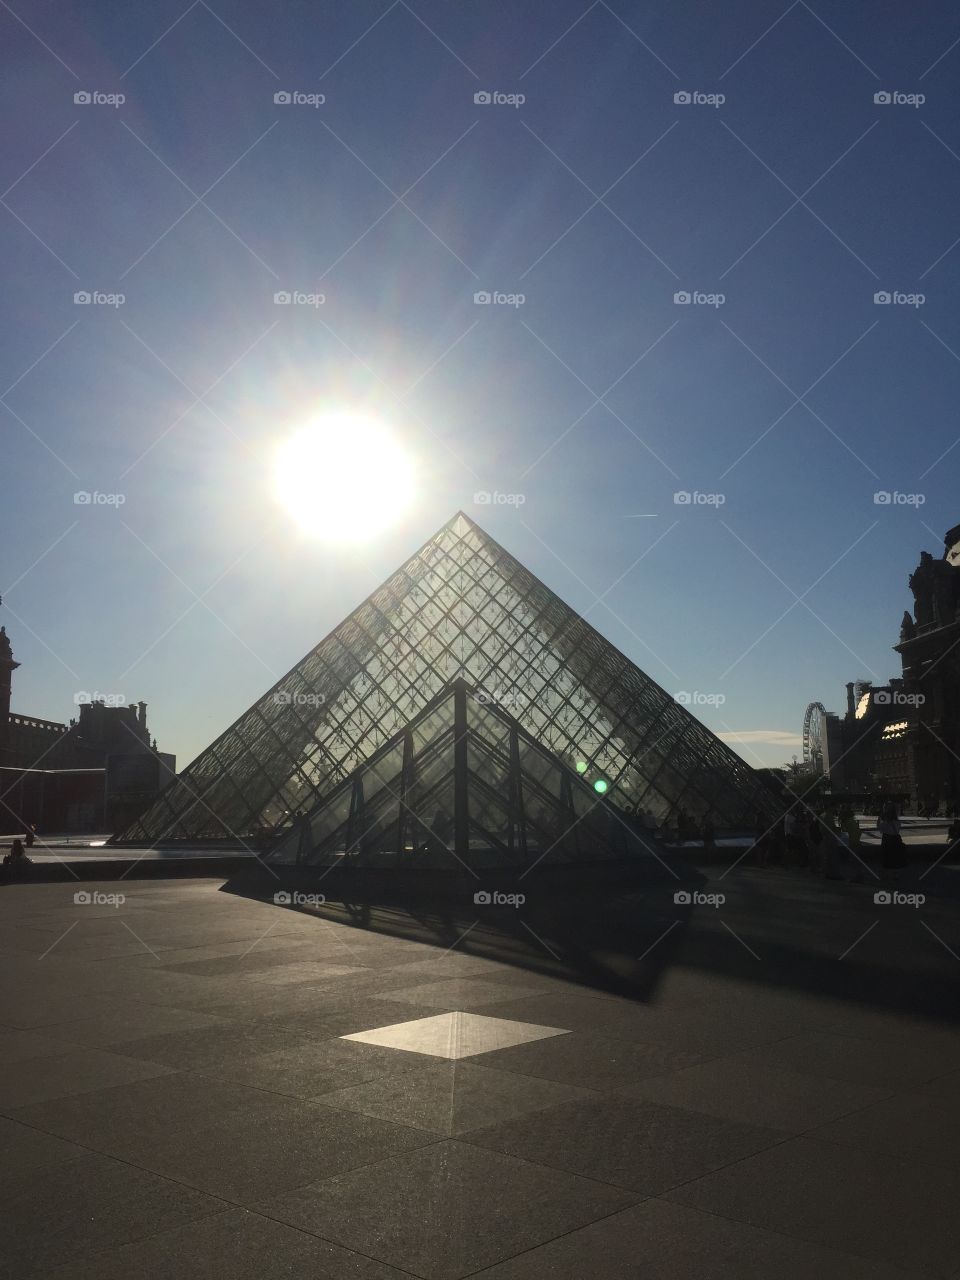 Louvre Pyramids in Paris